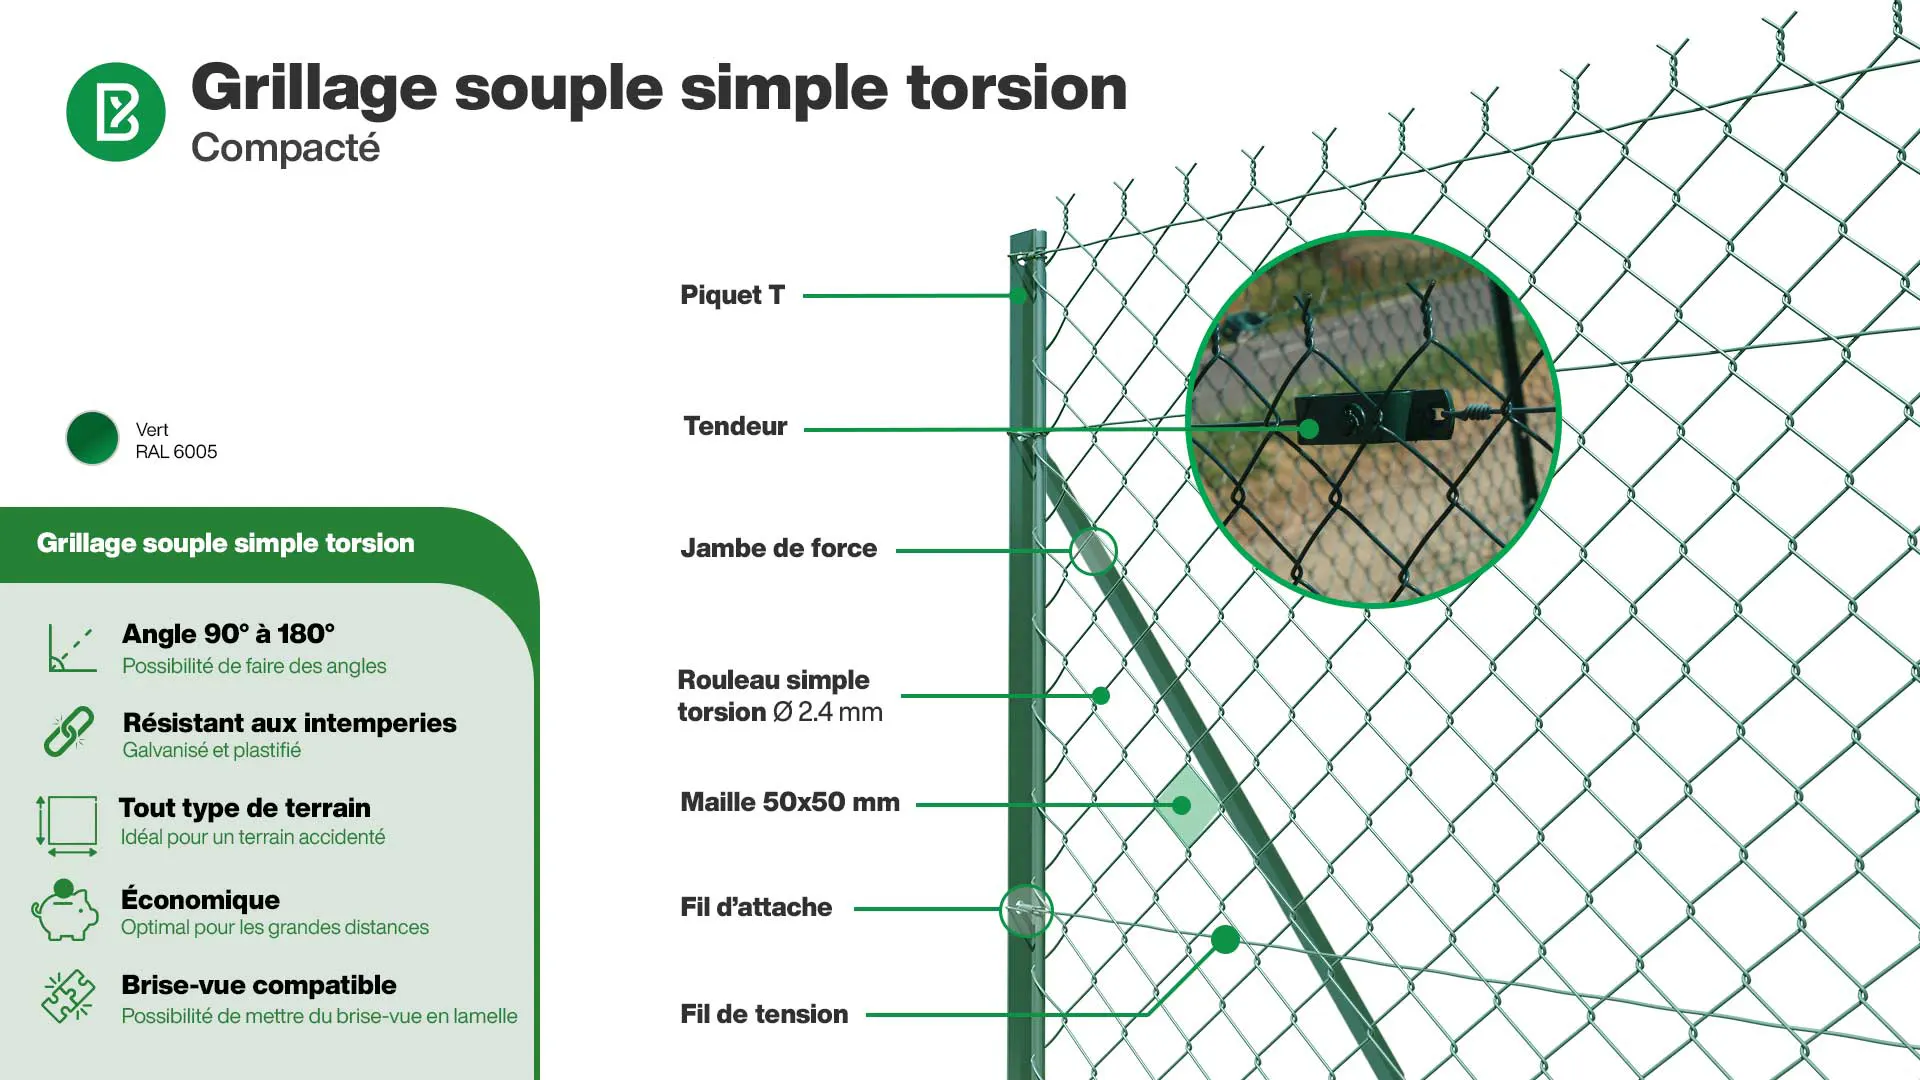 Grillage souple : Grillage simple torsion compacté